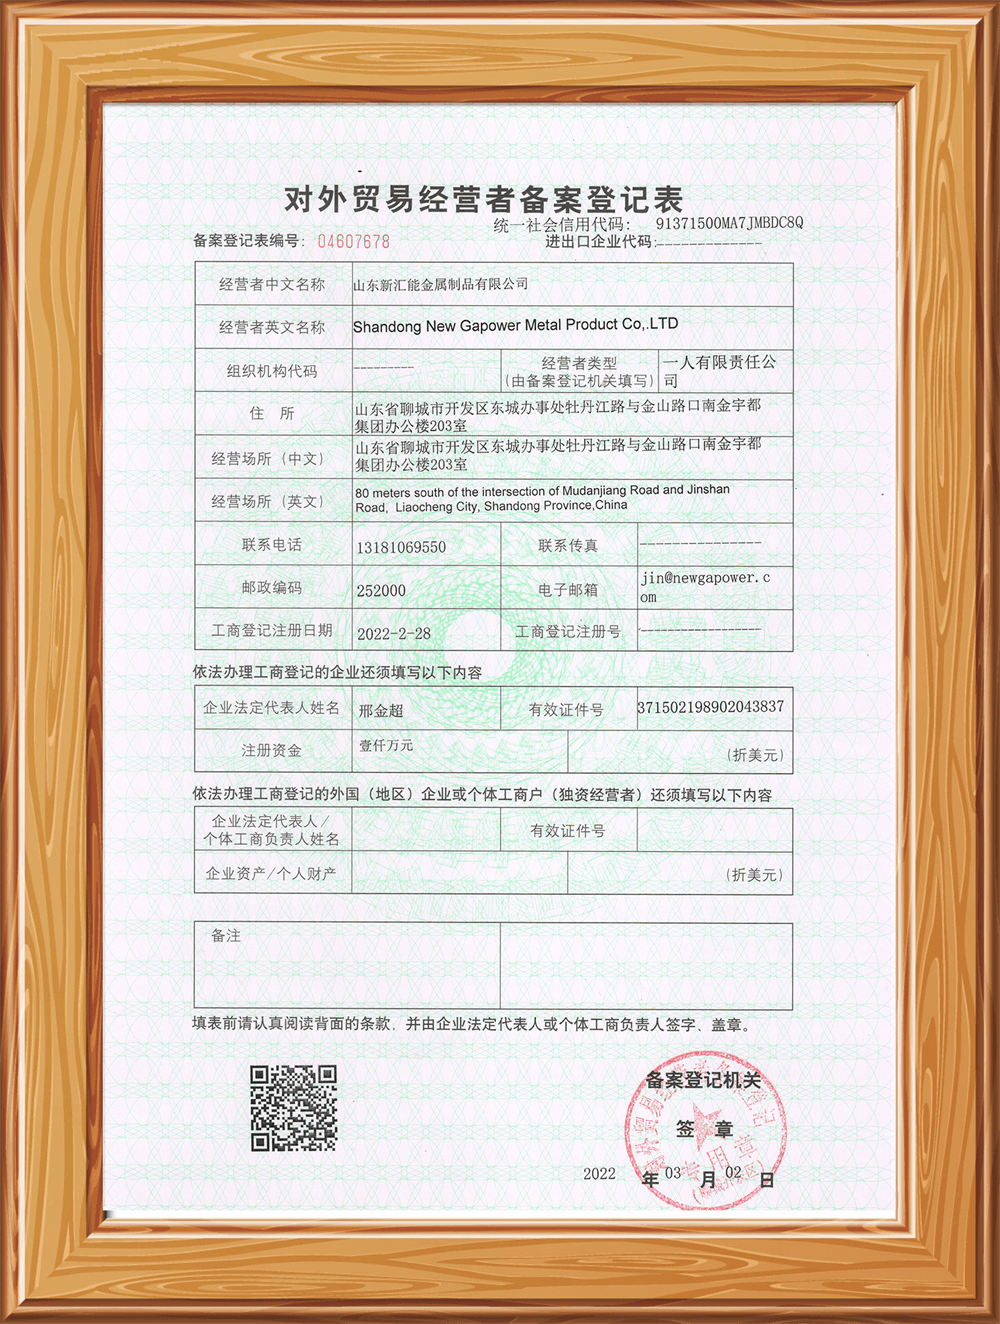 Export Certificate Registration